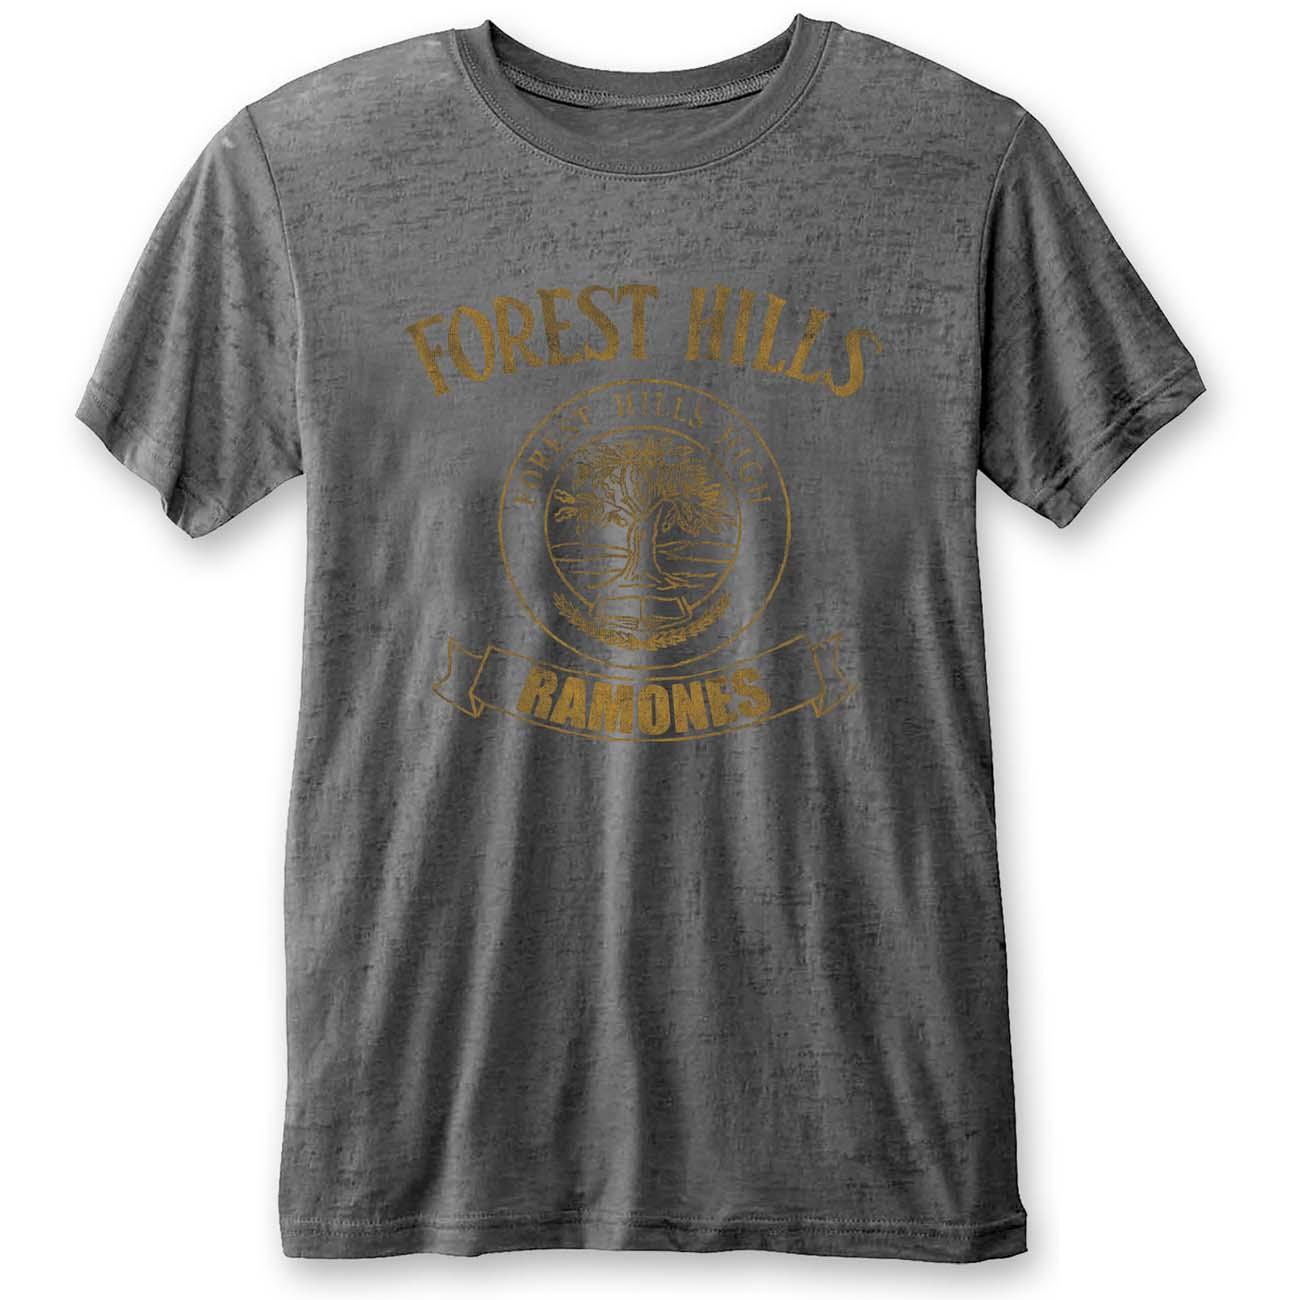 ラモーンズ Ramones オフィシャル商品 ユニセックス Forest Hills ビンテージ風 Tシャツ 半袖 トップス 【海外通販】